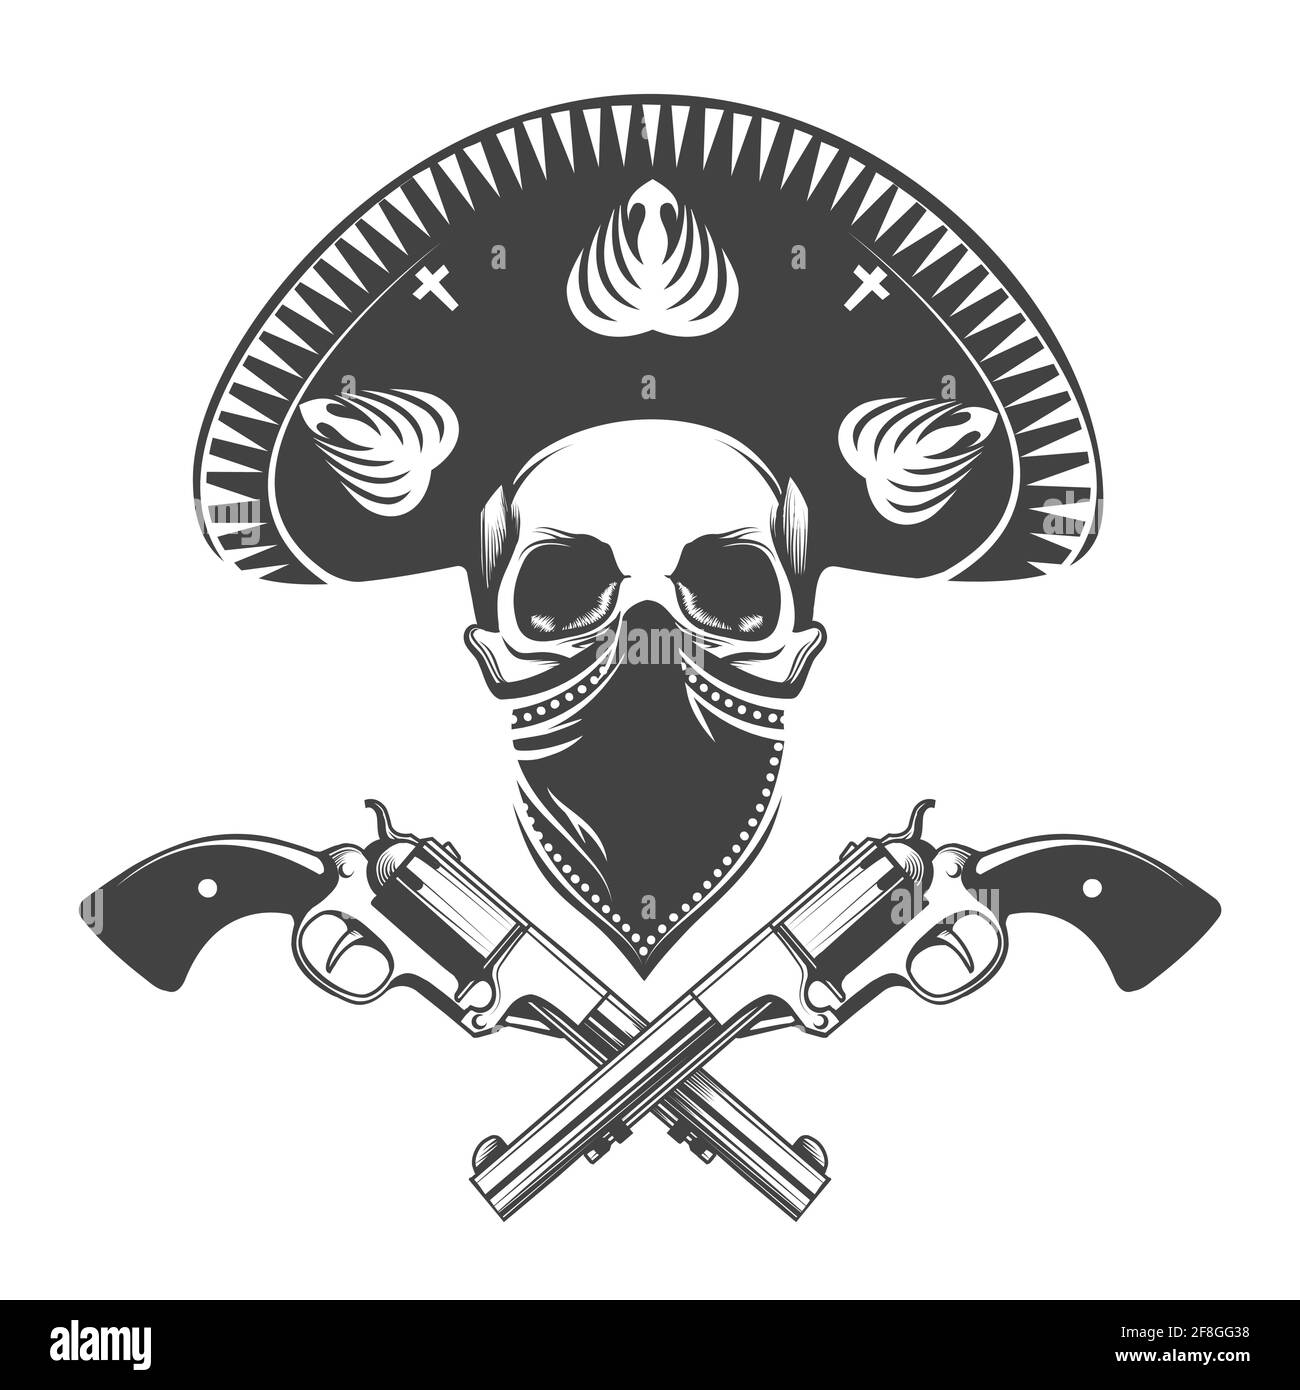 Mexikanischer Bandit Schädel in Sombrero Hut mit zwei Pistolen.Tattoo isoliert auf dunklem Hintergrund. Vektorgrafik. Stock Vektor